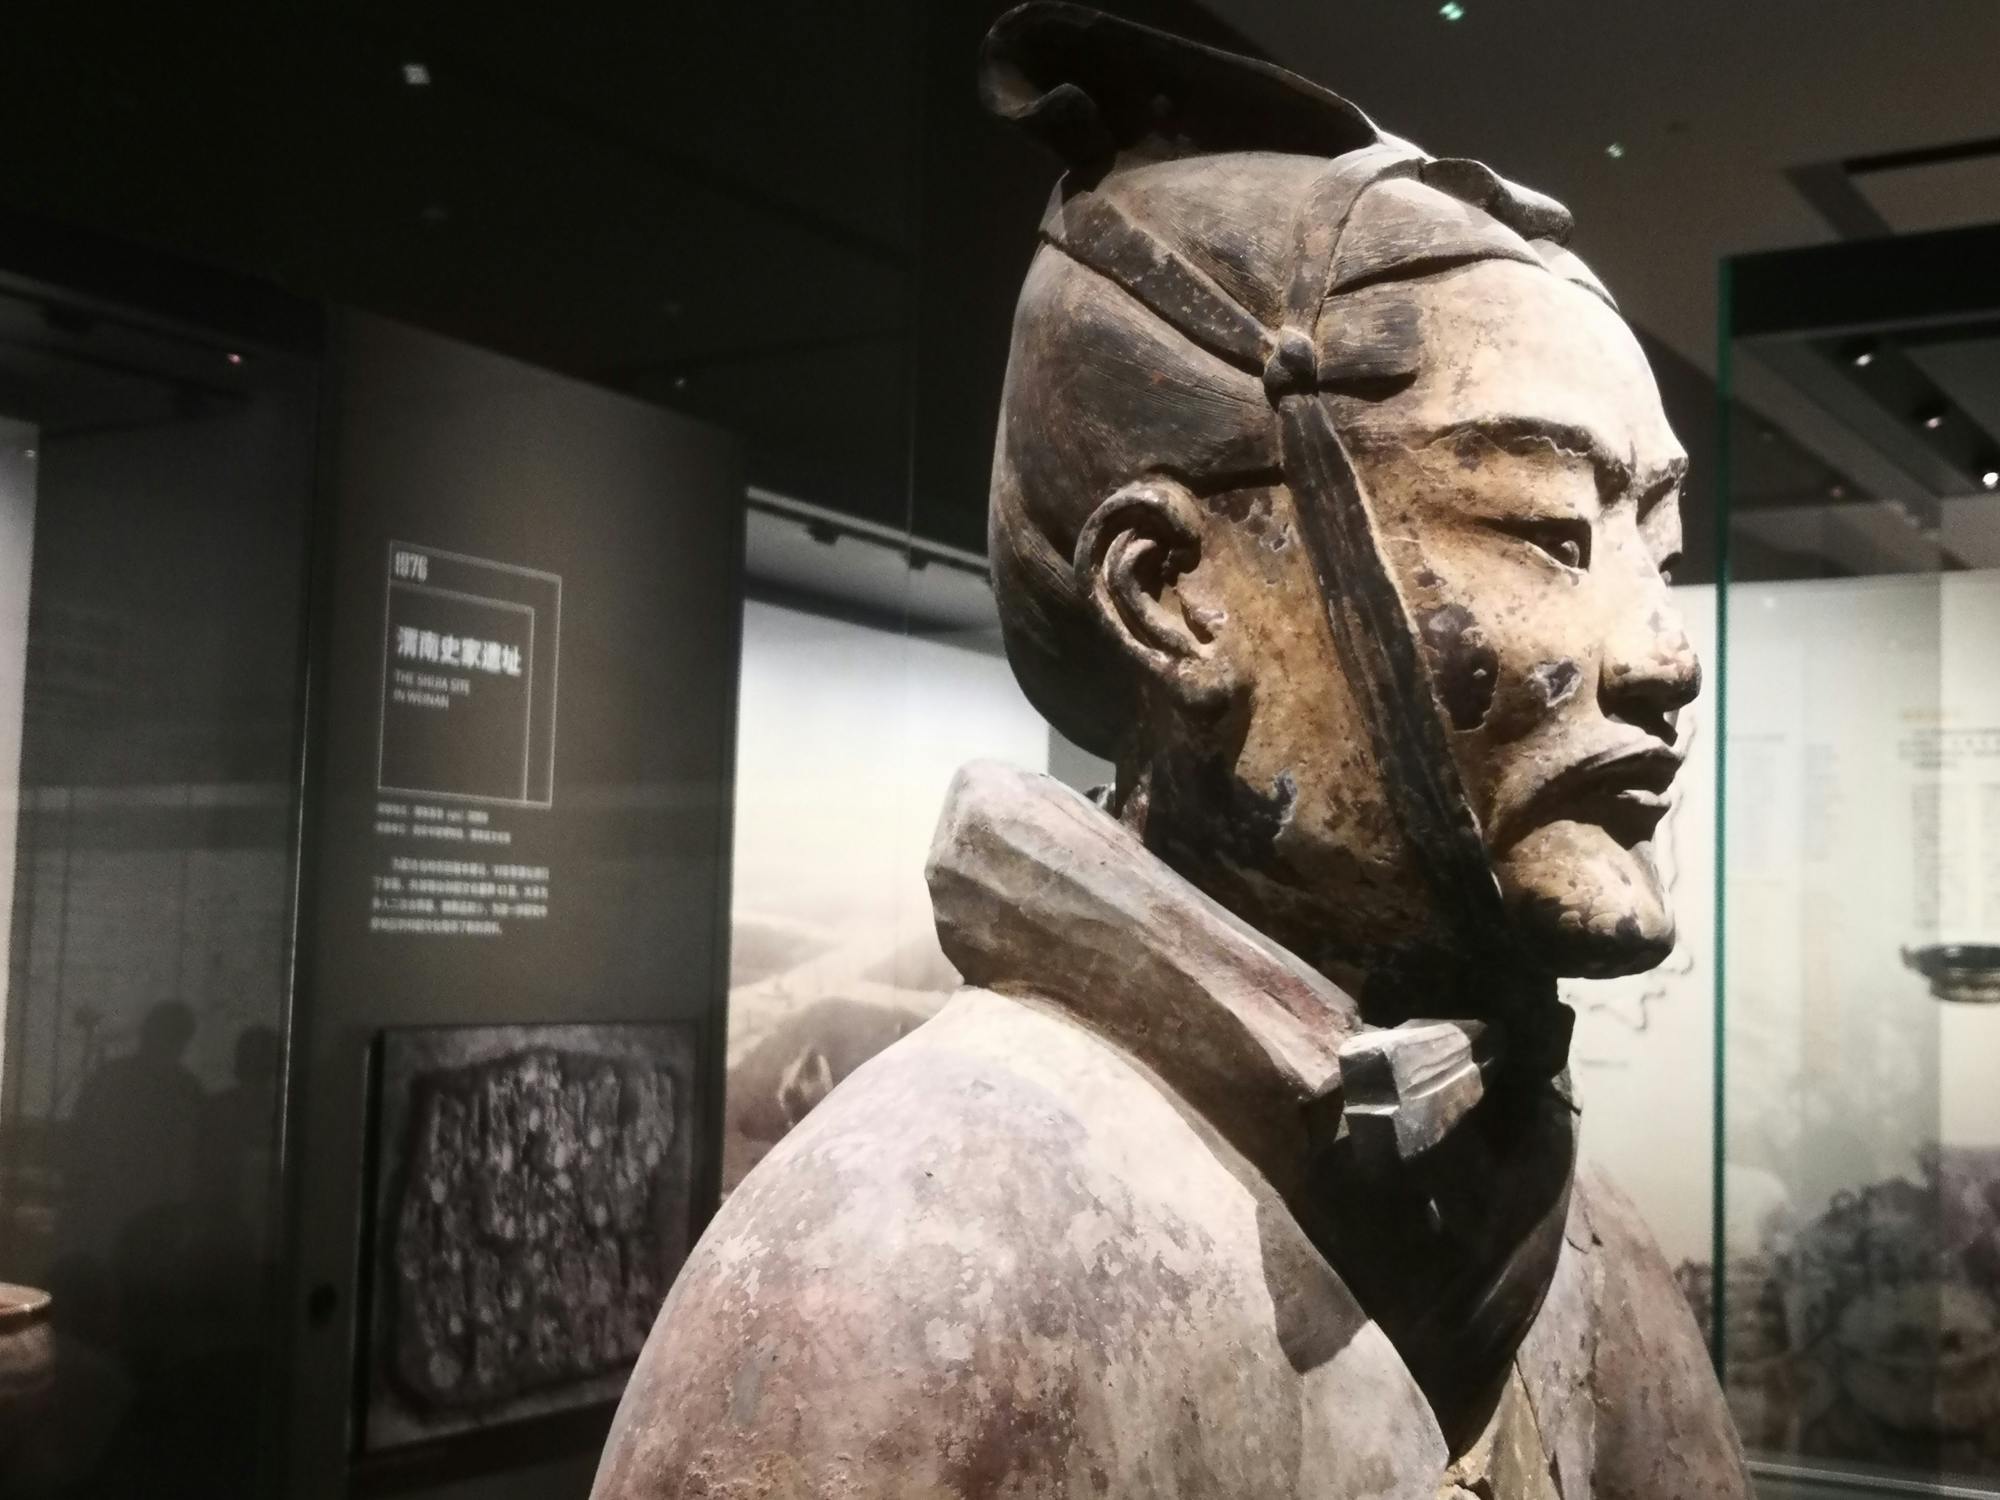 Geführte Bustour durch Xi'an zur Terrakotta-Armee von Kaiser Qin